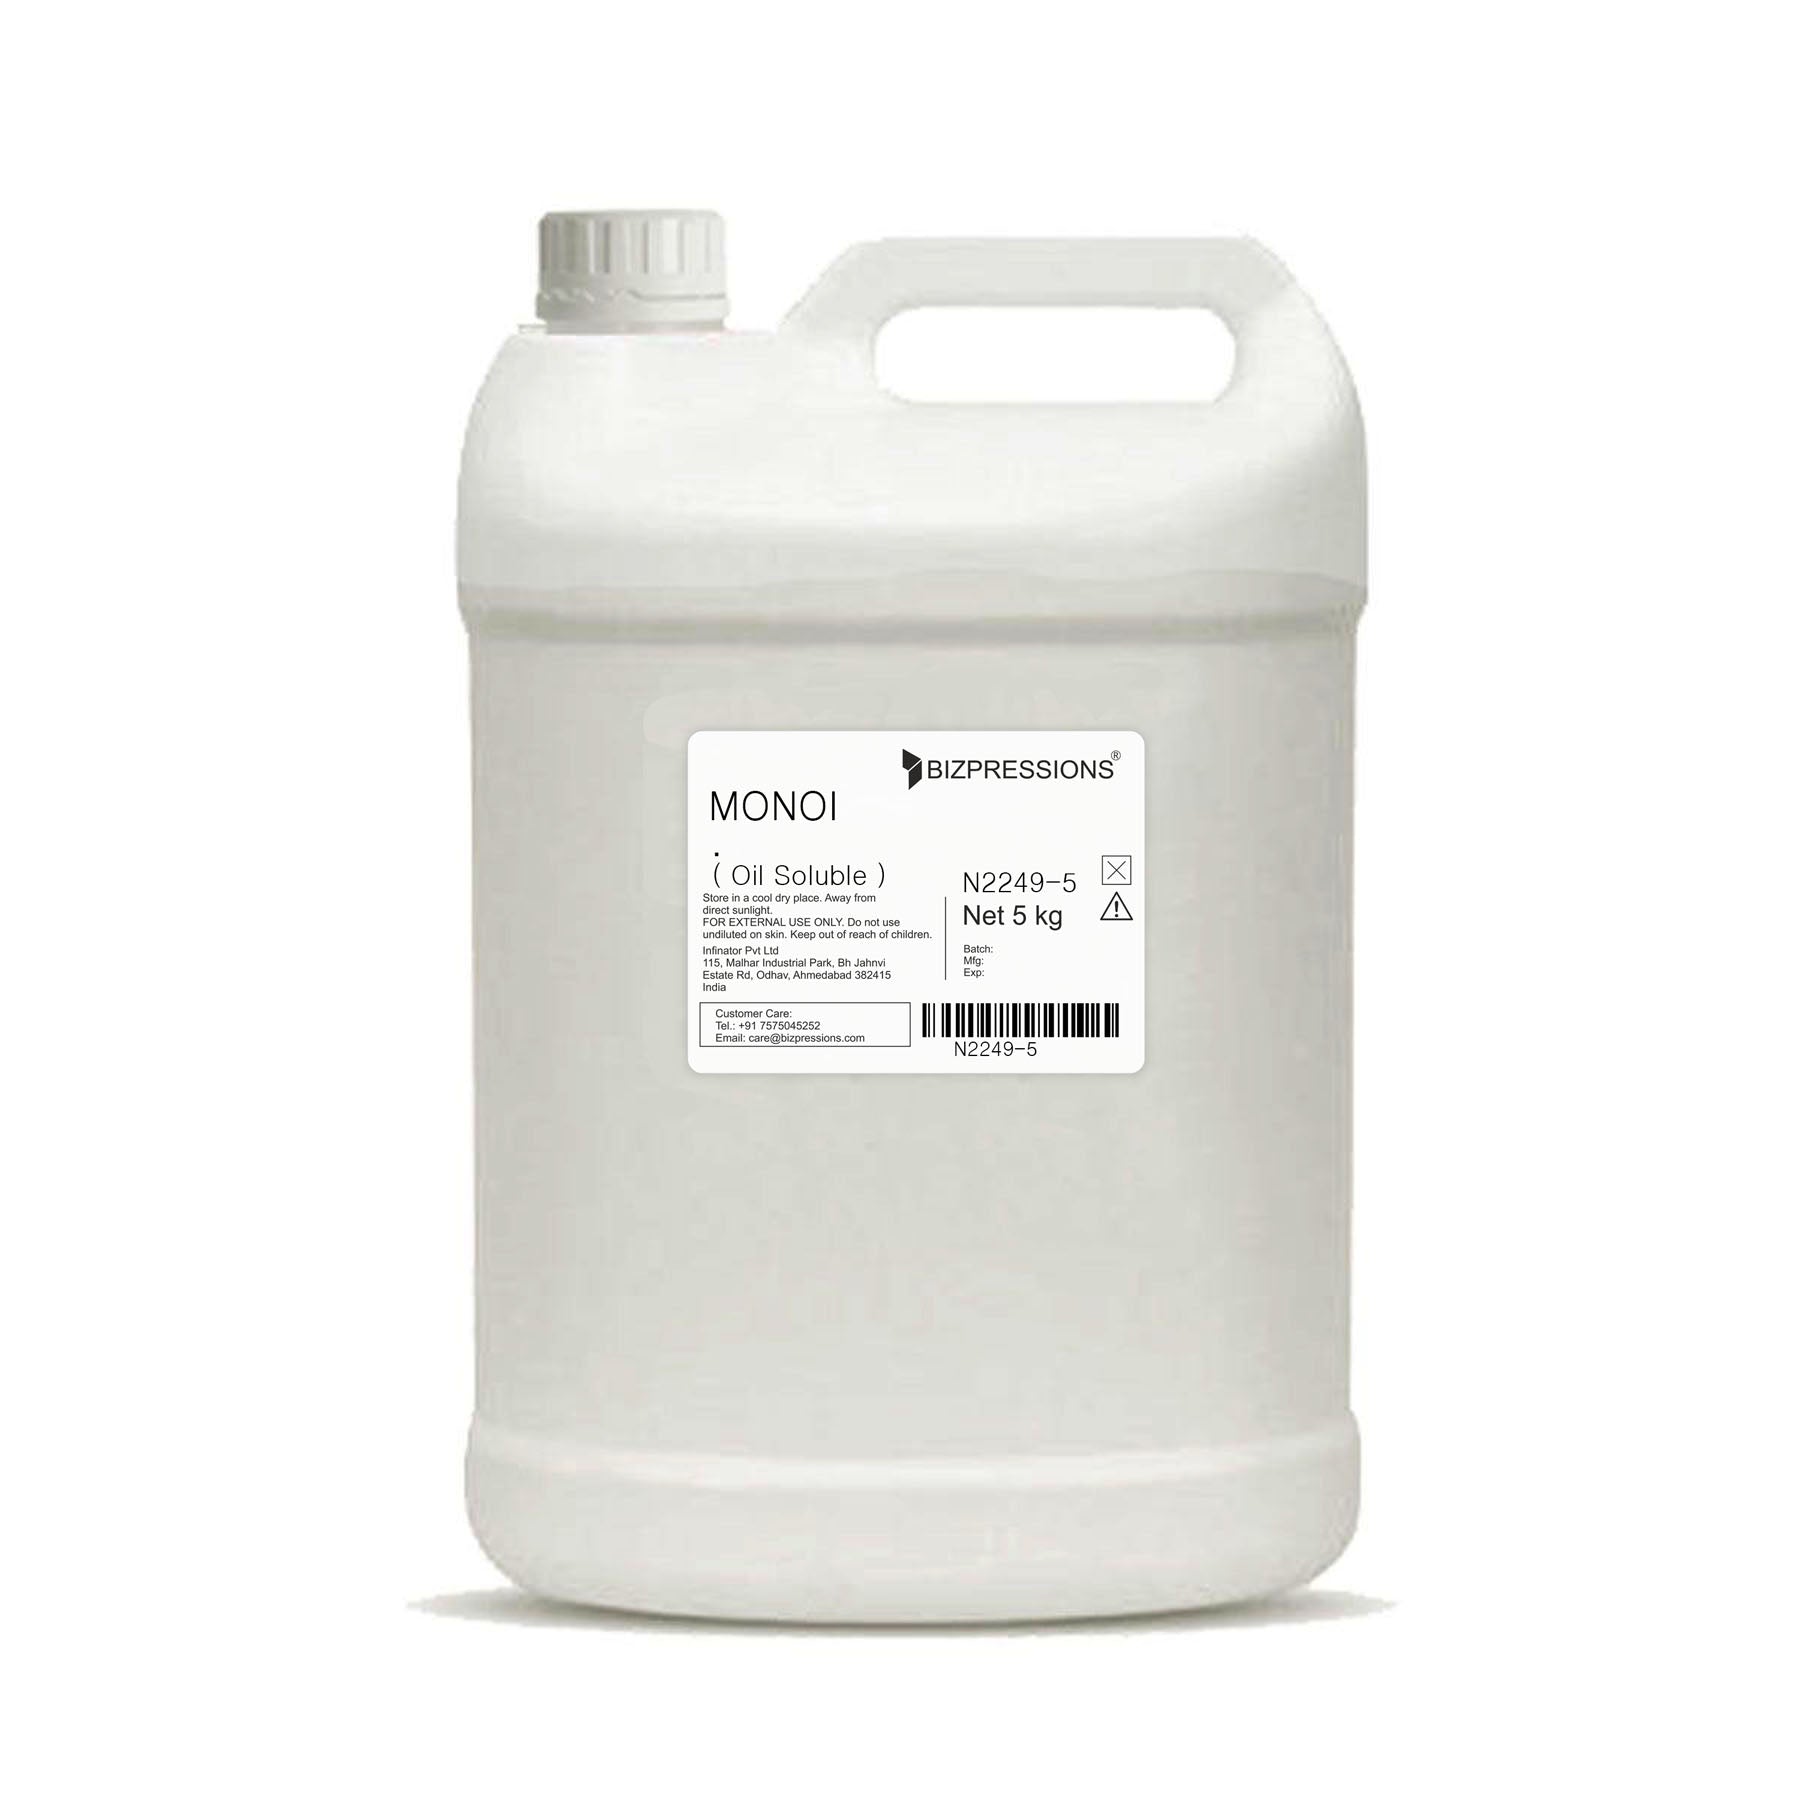 MONOI - Fragrance ( Oil Soluble ) - 5 kg